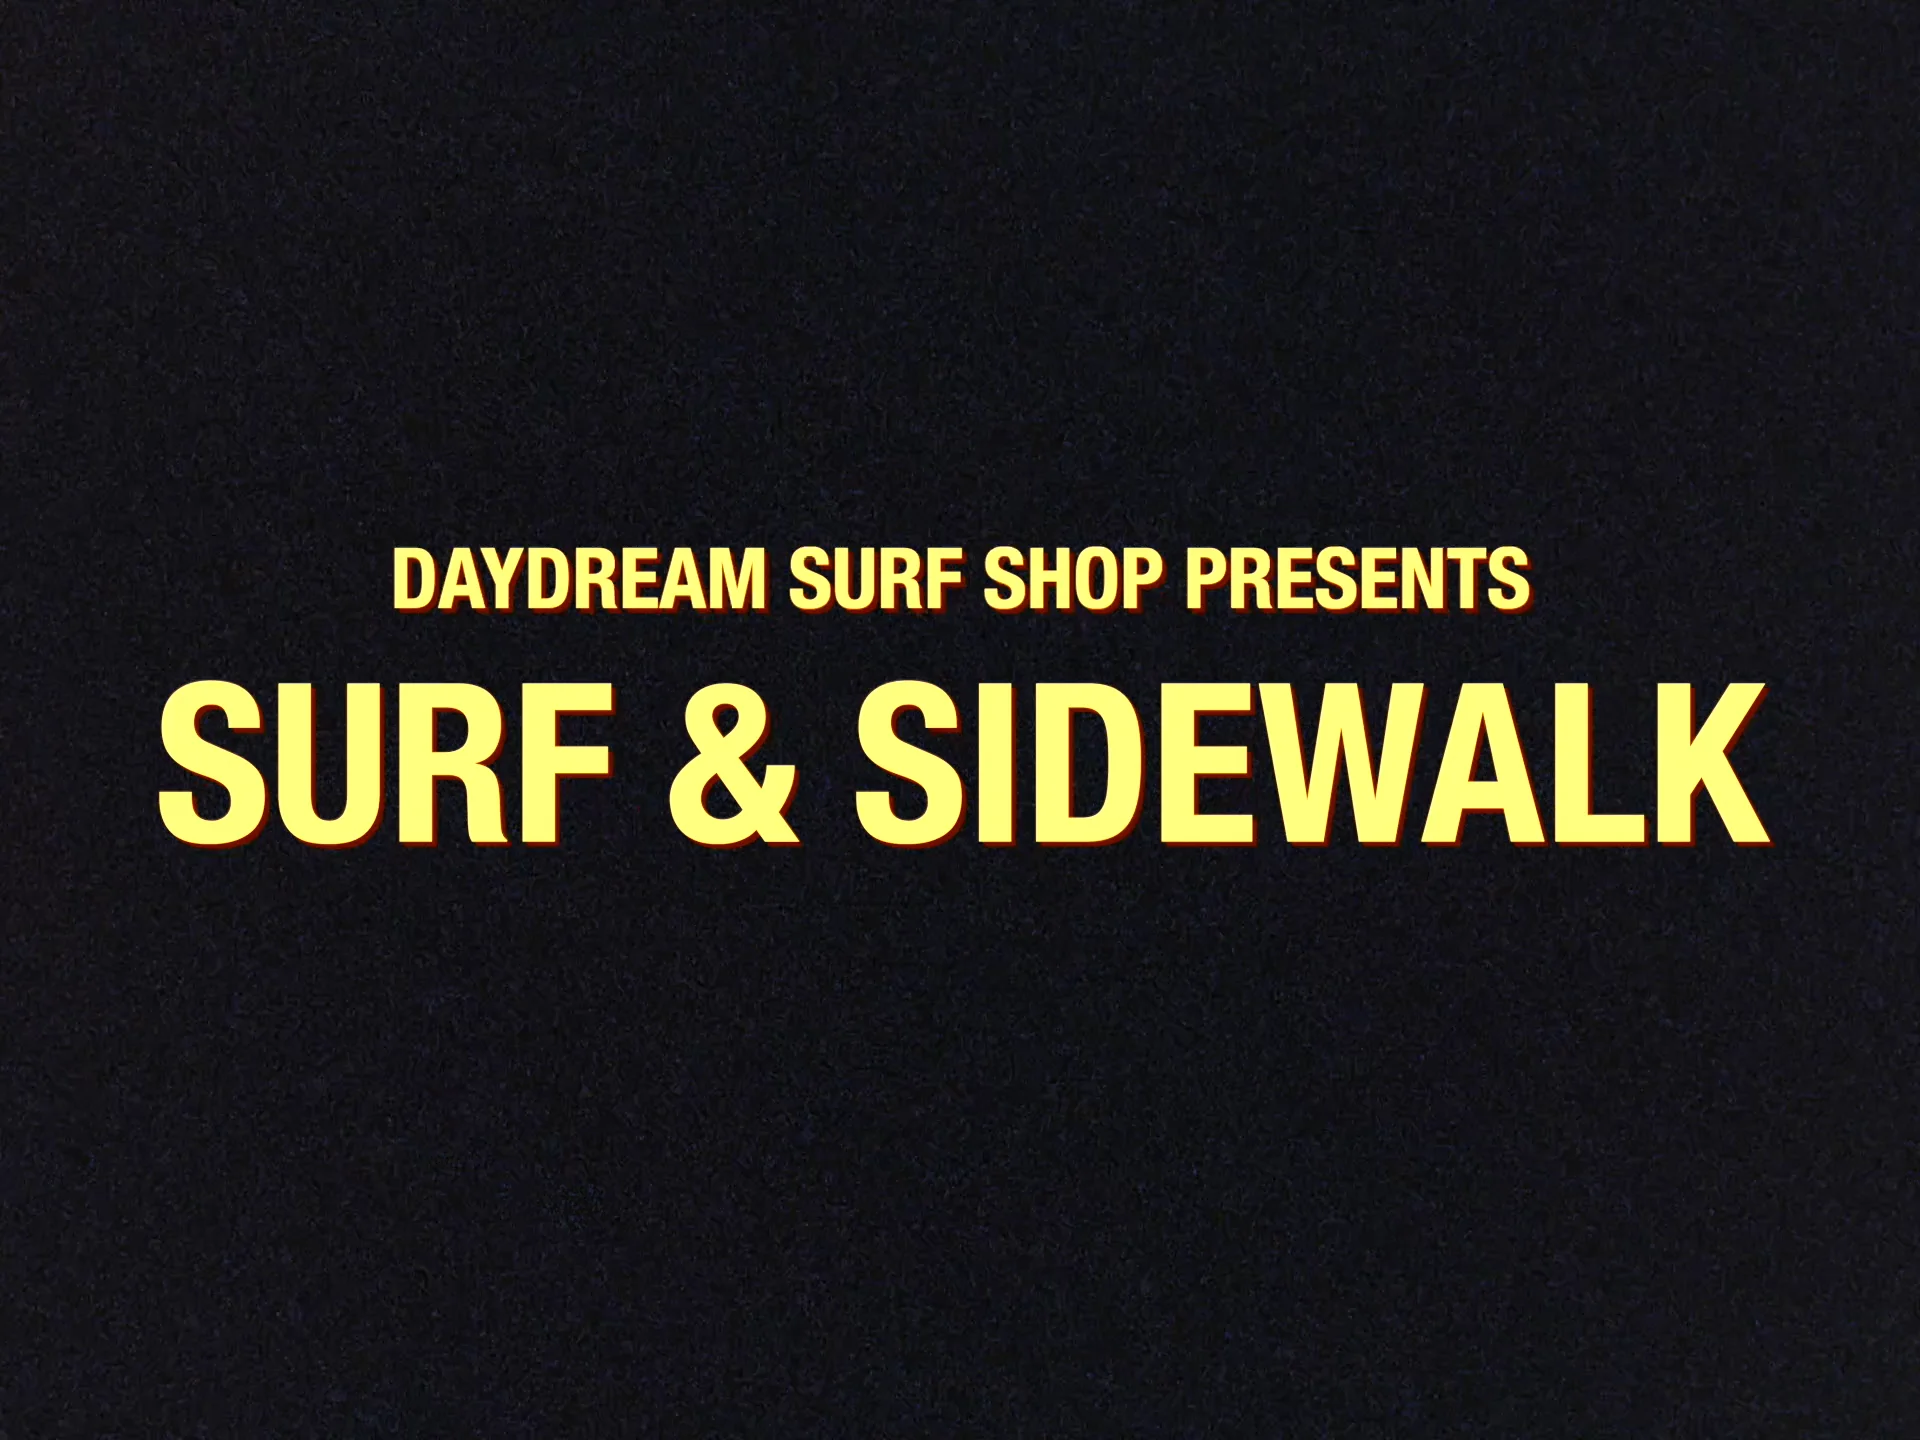 Sidewalk Surfer Poster